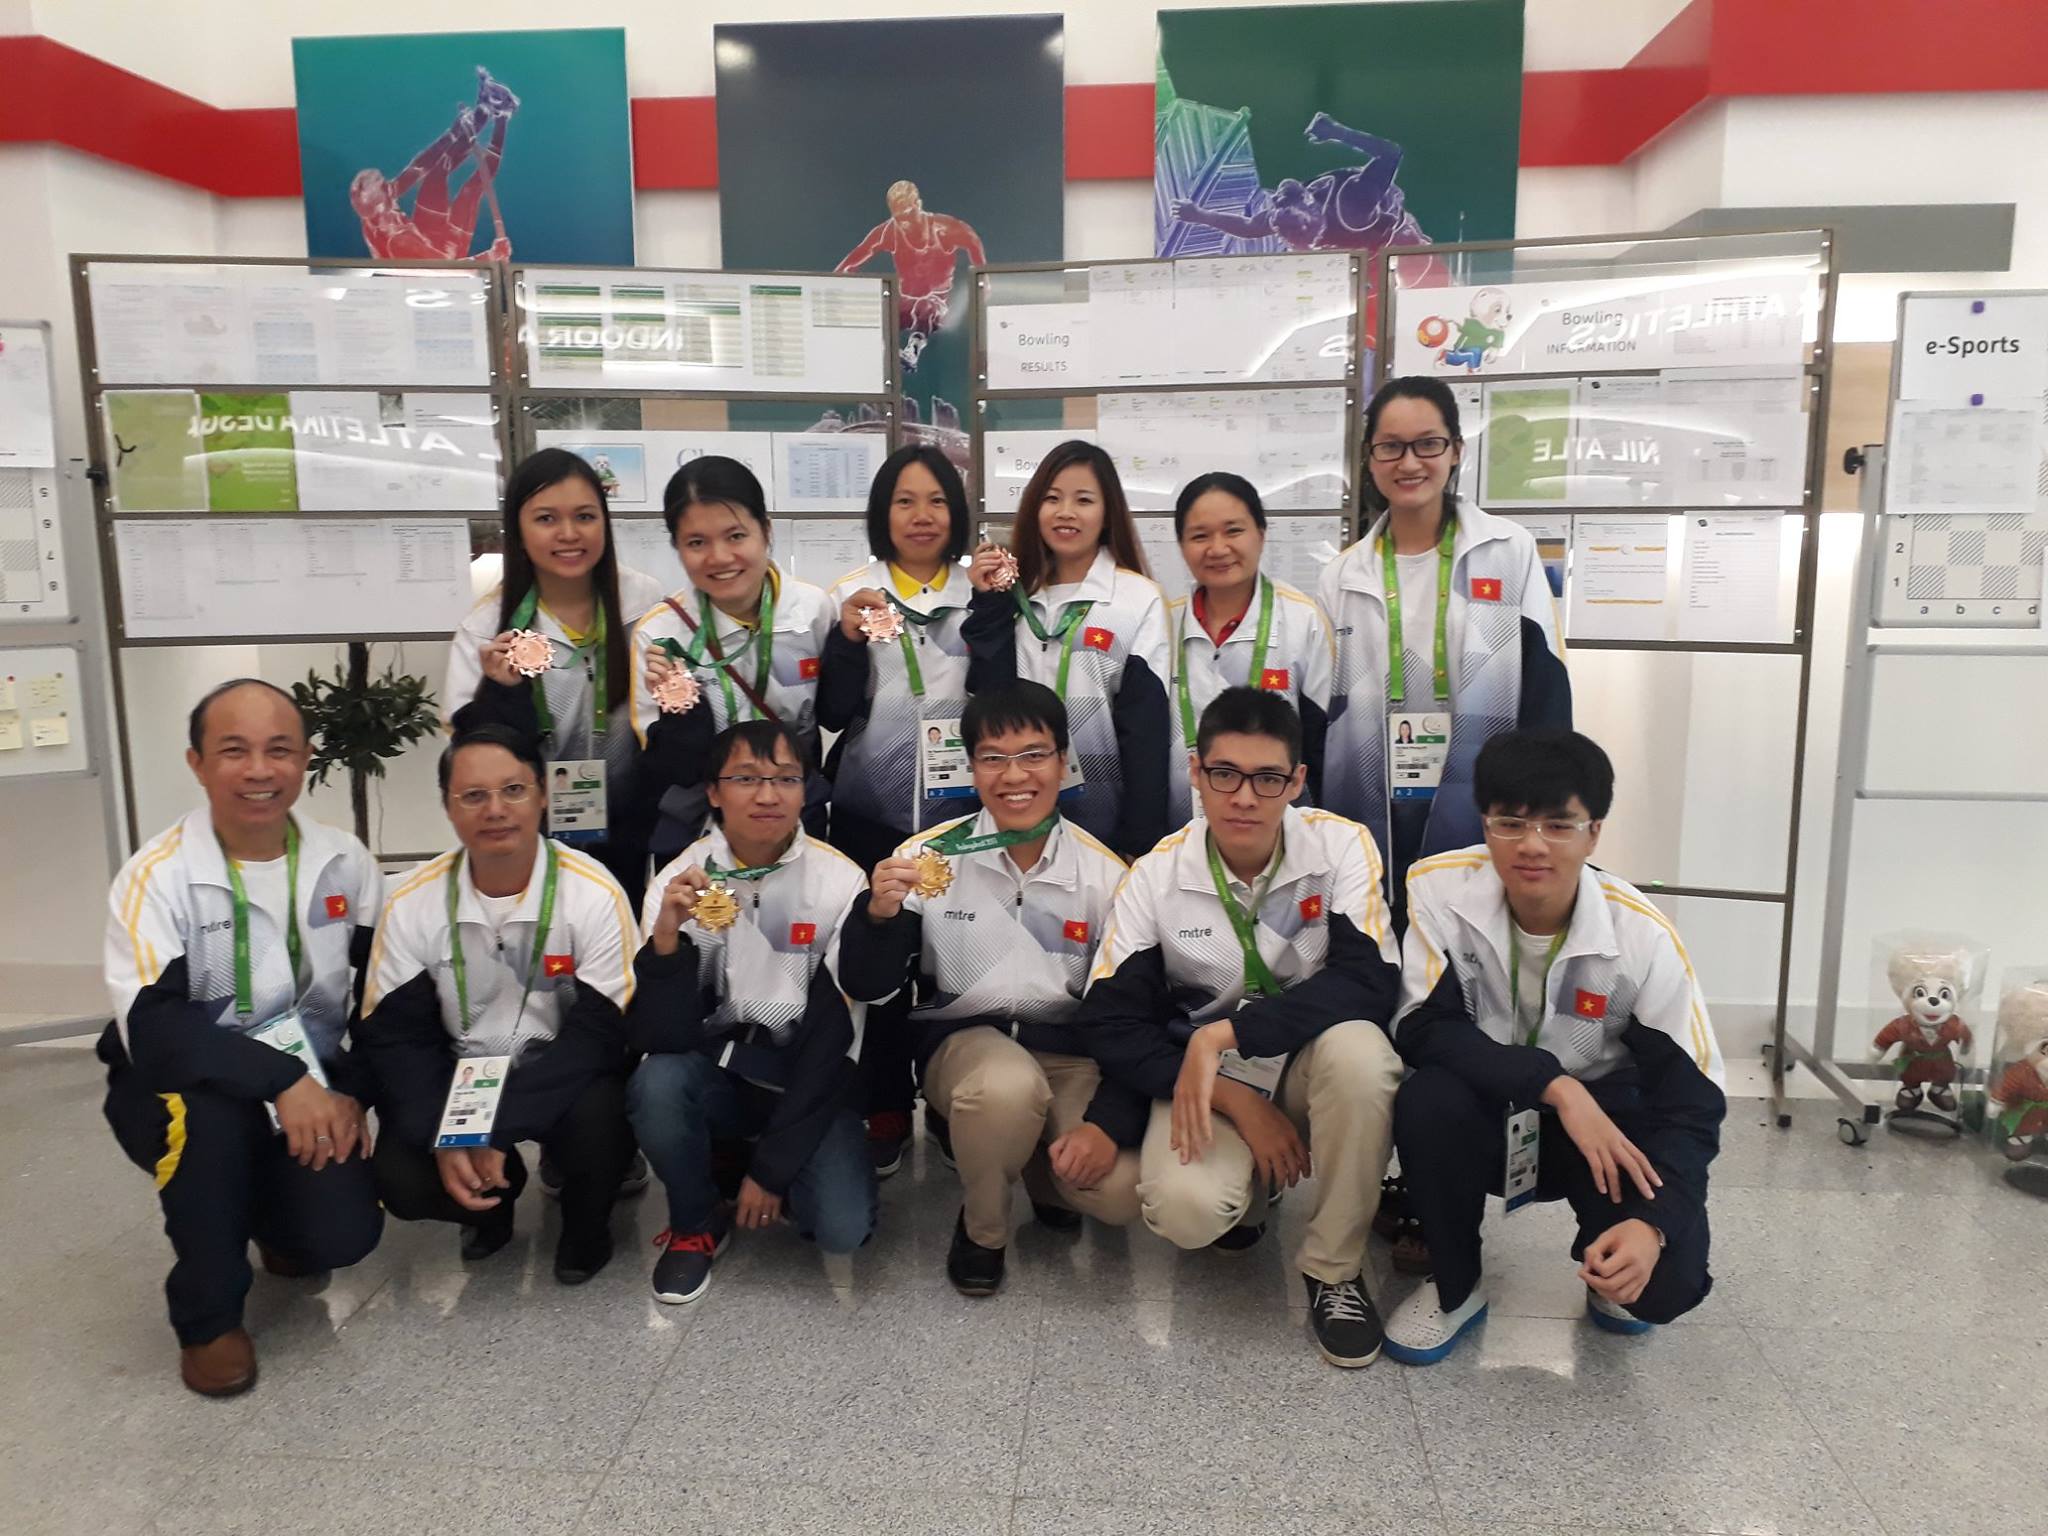 Đội tuyển cờ vua Việt Nam giành 3 HCV, 1 HCB, 2 HCĐ tại Đại hội thể thao châu Á các môn thể thao trong nhà và võ thuật lần V - Ashgabat 2017